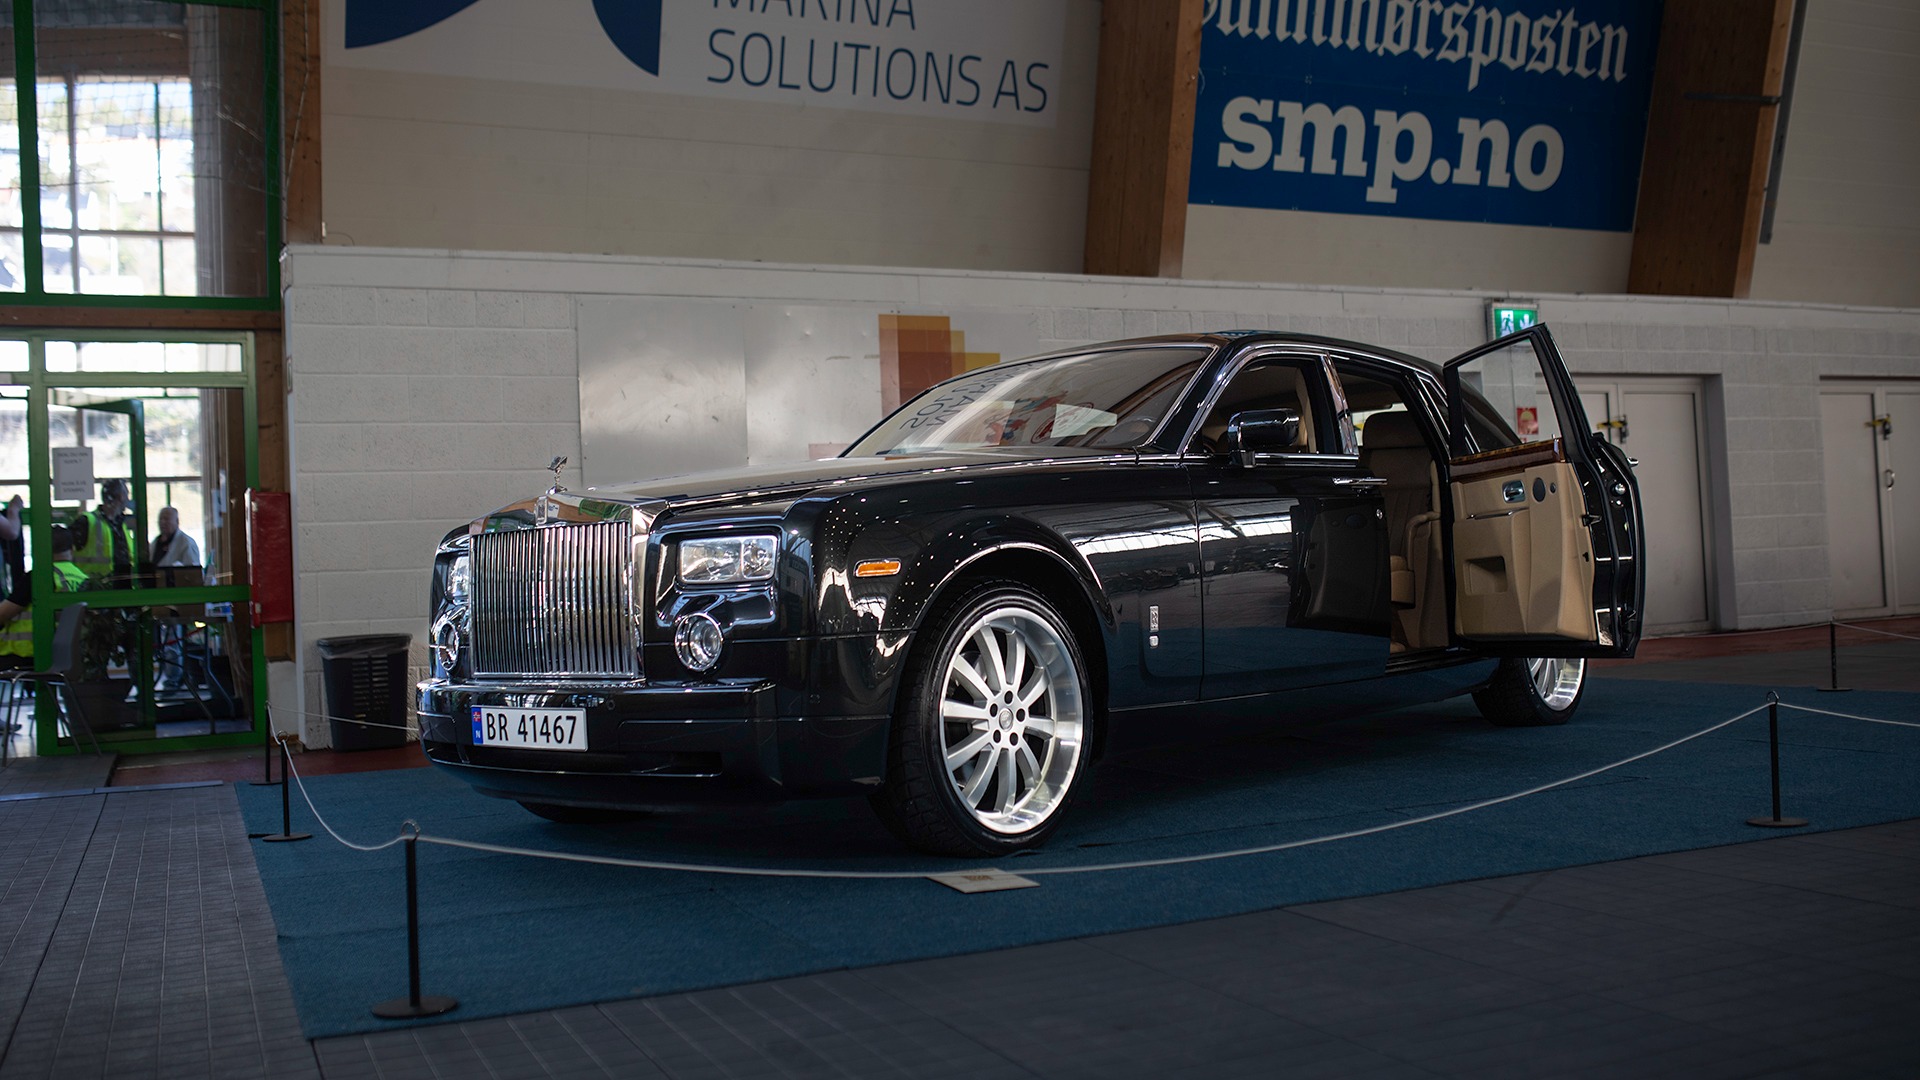 Det første som møter deg ved inngangen er en maffig Rolls Royce Phantom. Selvfølgelig sort, og med herlig beige interiør.